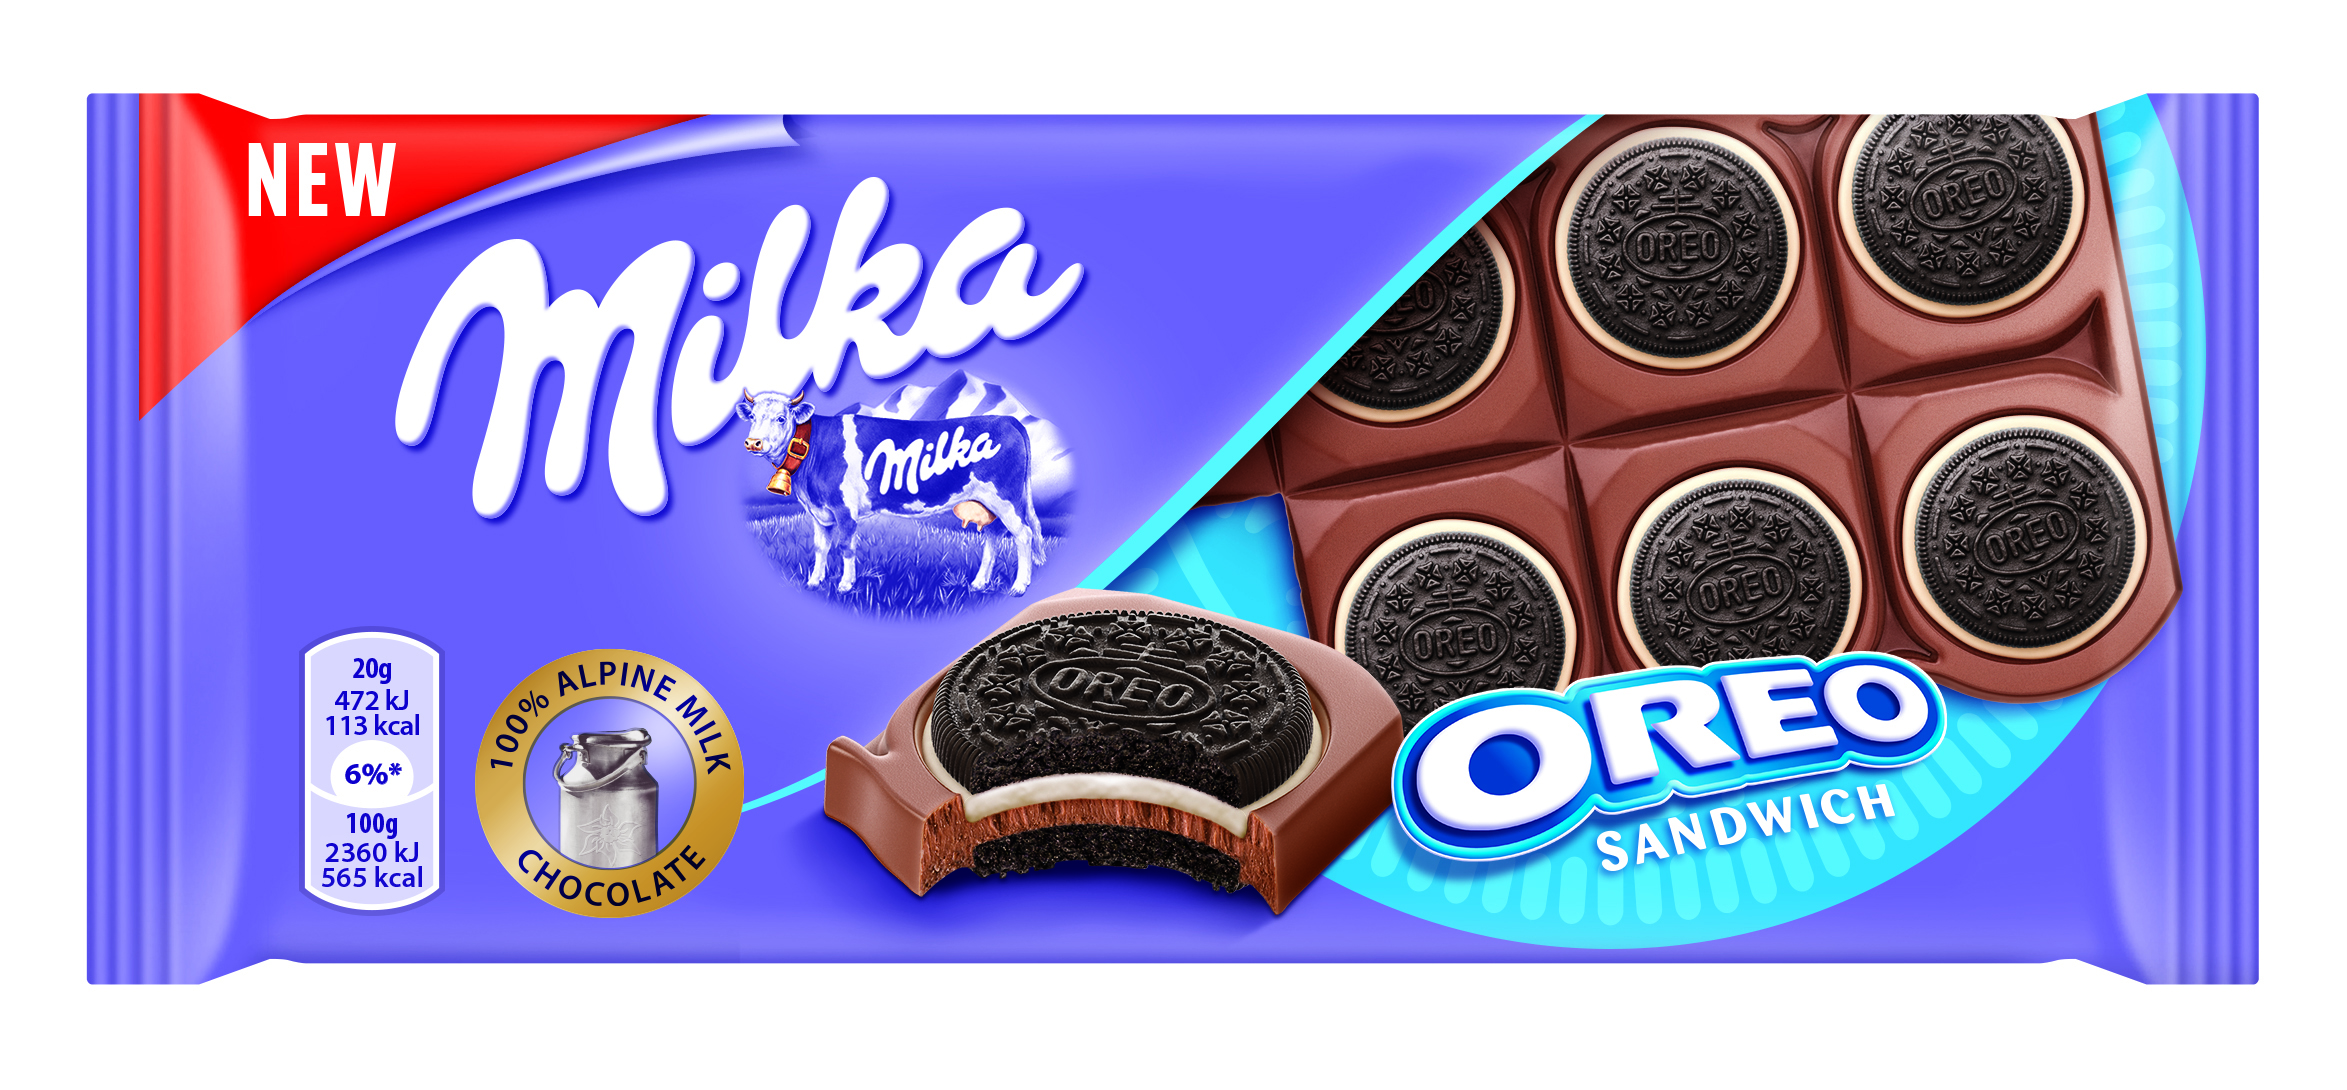 Nowa tabliczka Milka z całymi ciastkami Oreo